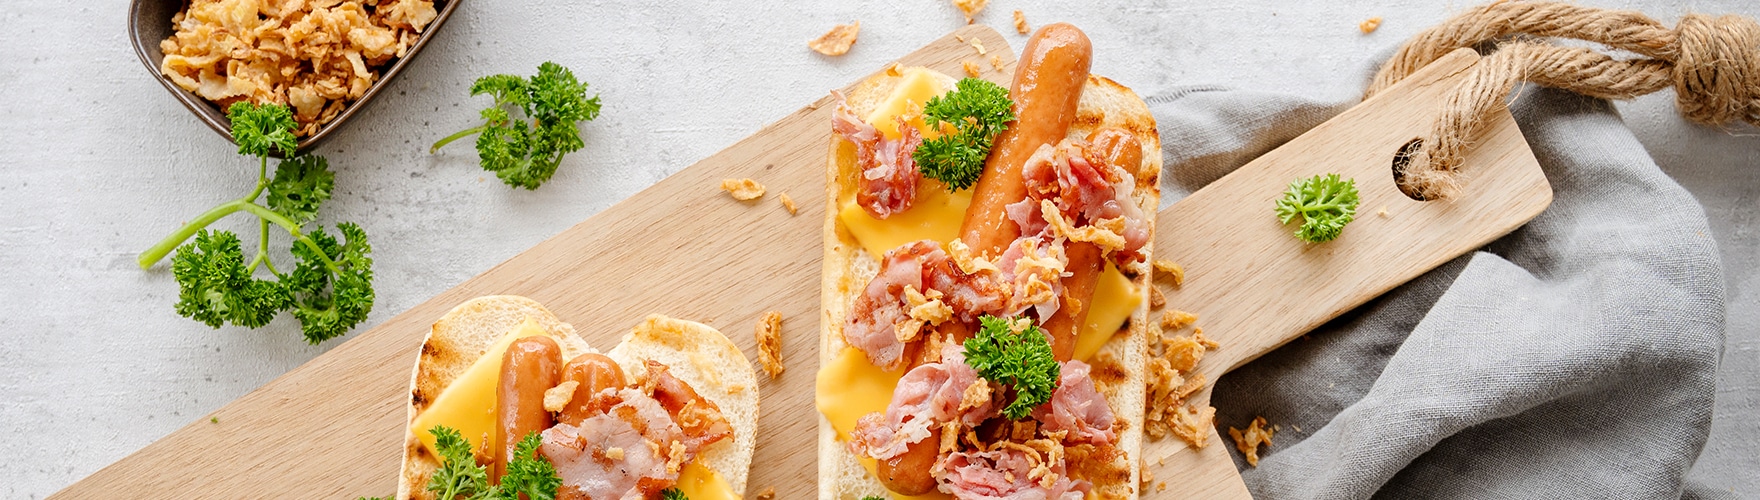 Broodje hotdog met cheddar kaas, bacon, gebakken uitjes en peterselie